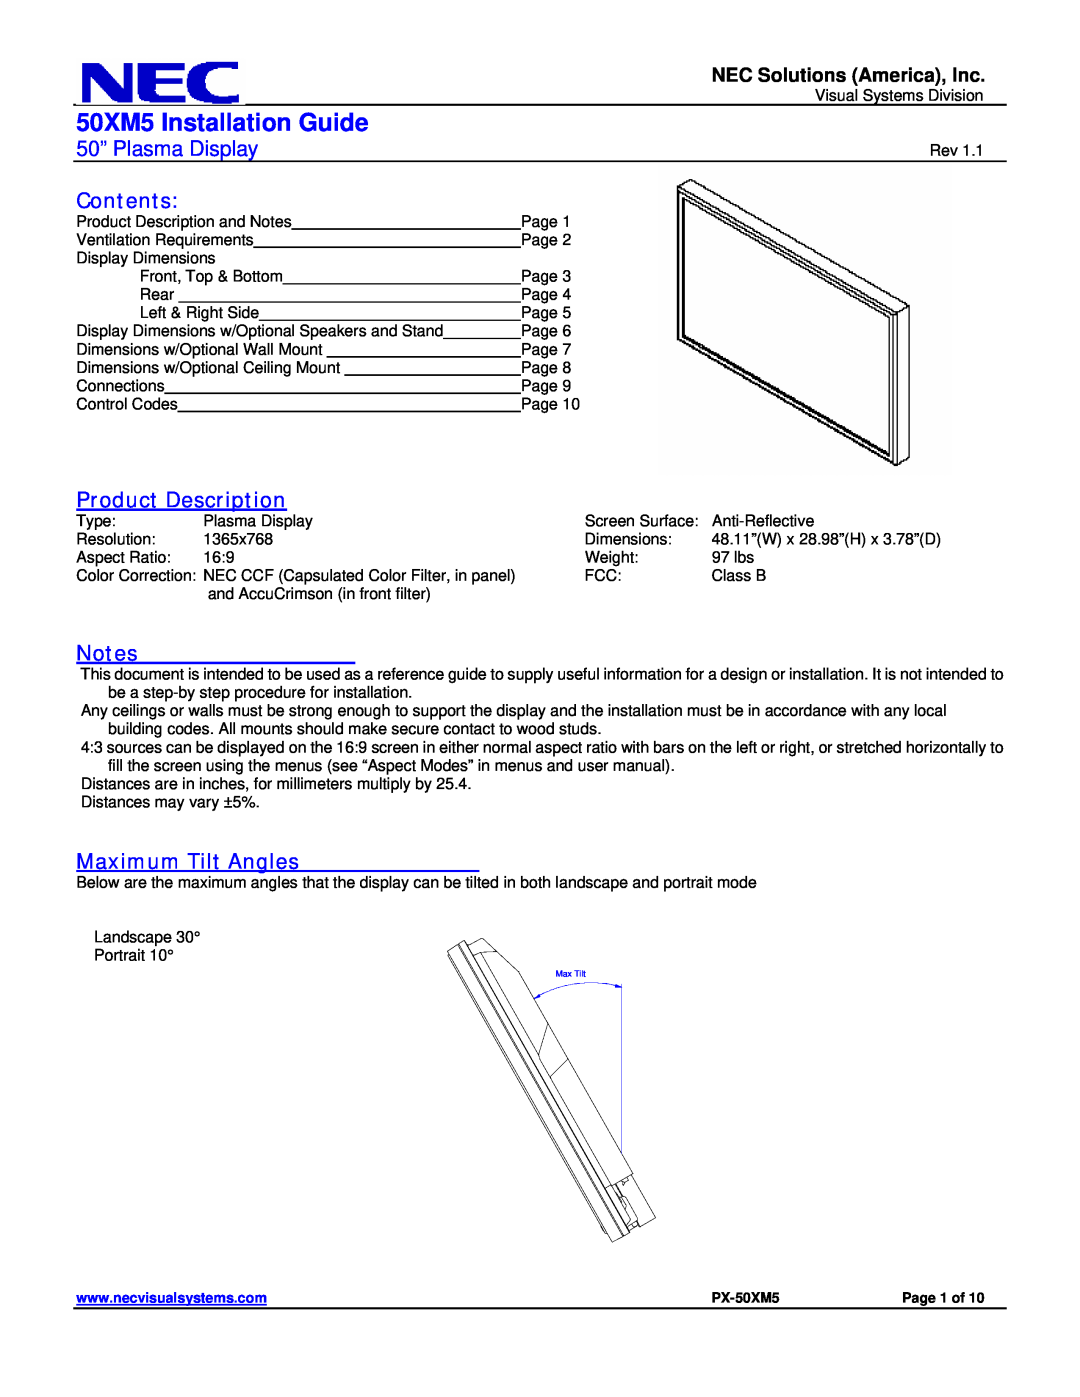 NEC dimensions 50XM5 Installation Guide, 50” Plasma Display, Contents, Product Description, Maximum Tilt Angles 